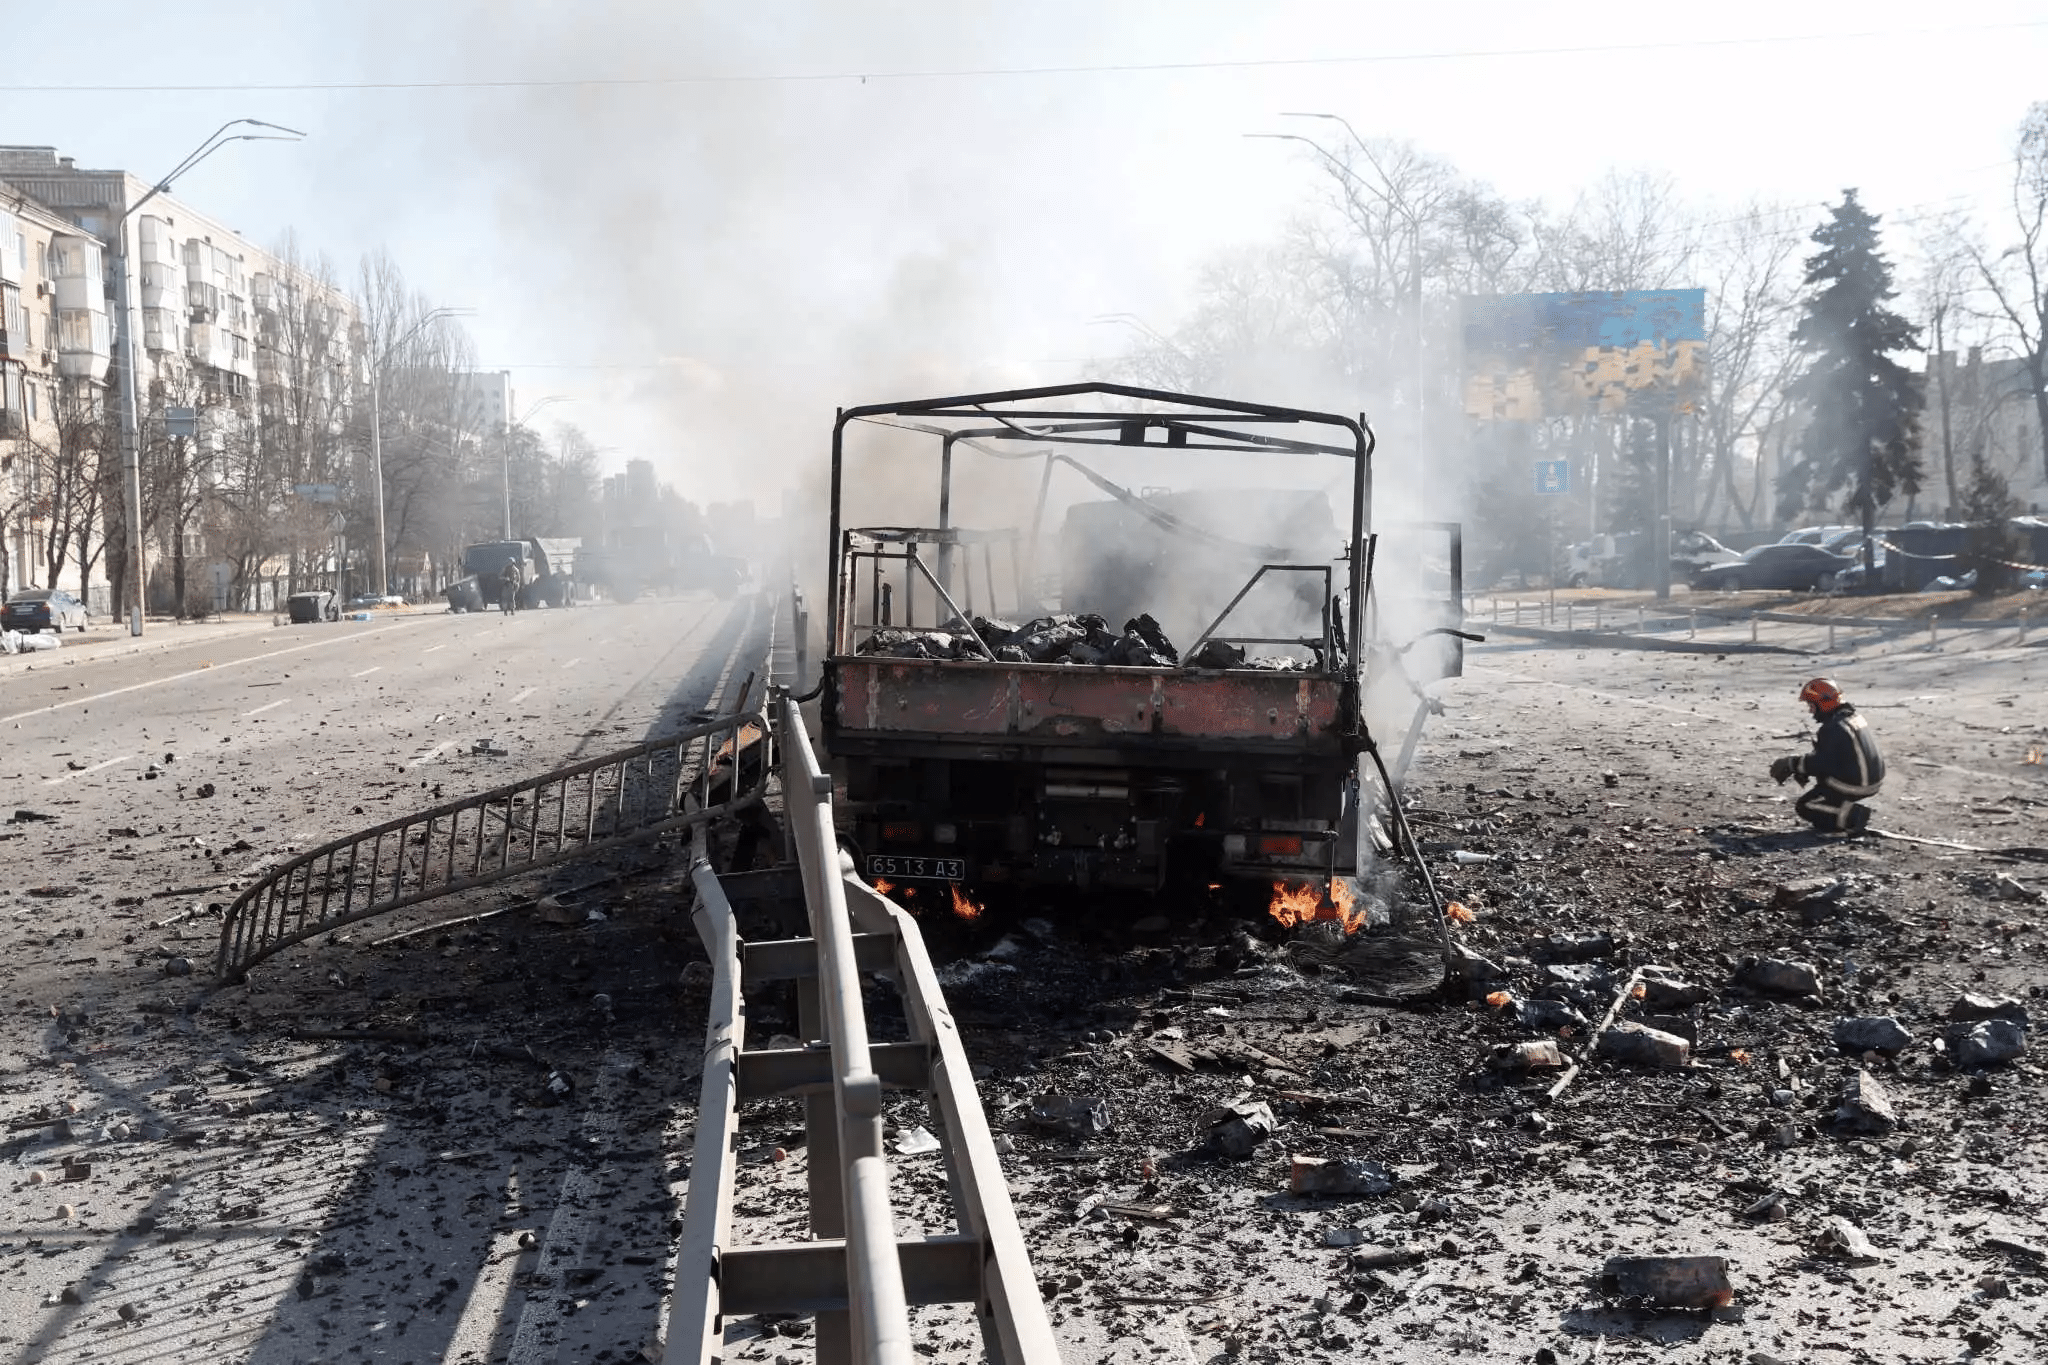 Ουκρανία: Τους 10 έφτασαν οι νεκροί Έλληνες ομογενείς - Οργή ΥΠ.ΕΞ. για τις επιθέσεις κατά των αμάχων ΦΩΤΟ - ΒΙΝΤΕΟ